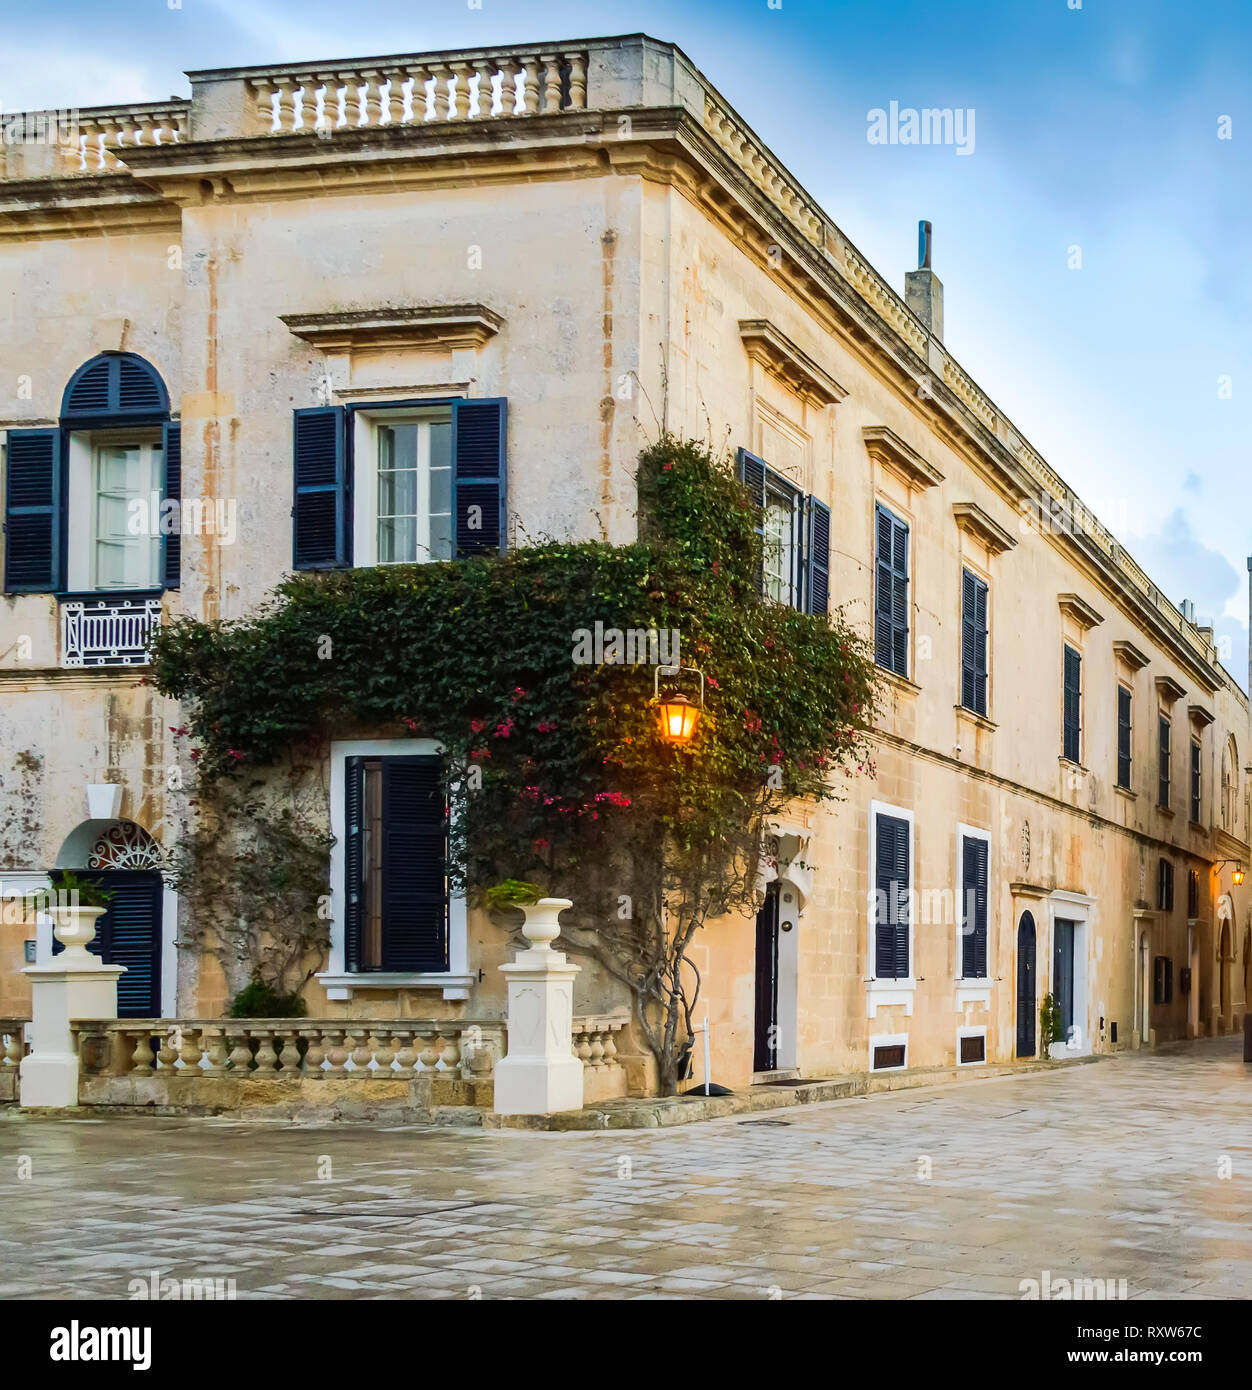 Mdina, Malta: Stadthaus an der Bastion Square mit künstlerischen Windows, Klettern und Laterne Licht. Mittelalterliche maltesische Architektur Stockfoto